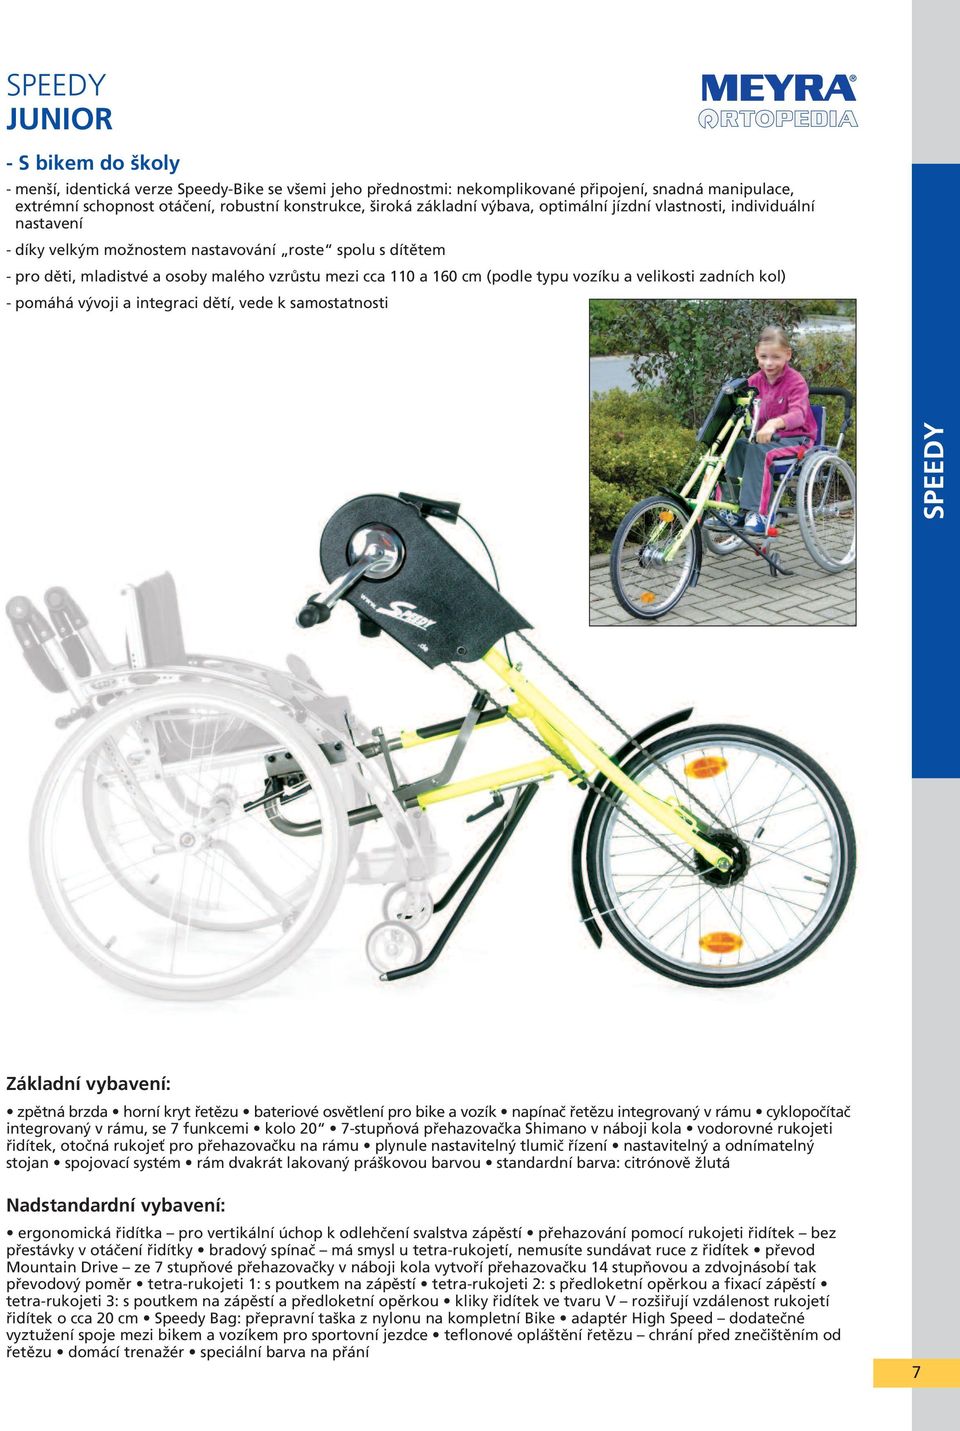 vozíku a velikosti zadních kol) - pomáhá vývoji a integraci dětí, vede k samostatnosti SPEEDY zpětná brzda horní kryt řetězu bateriové osvětlení pro bike a vozík napínač řetězu integrovaný v rámu